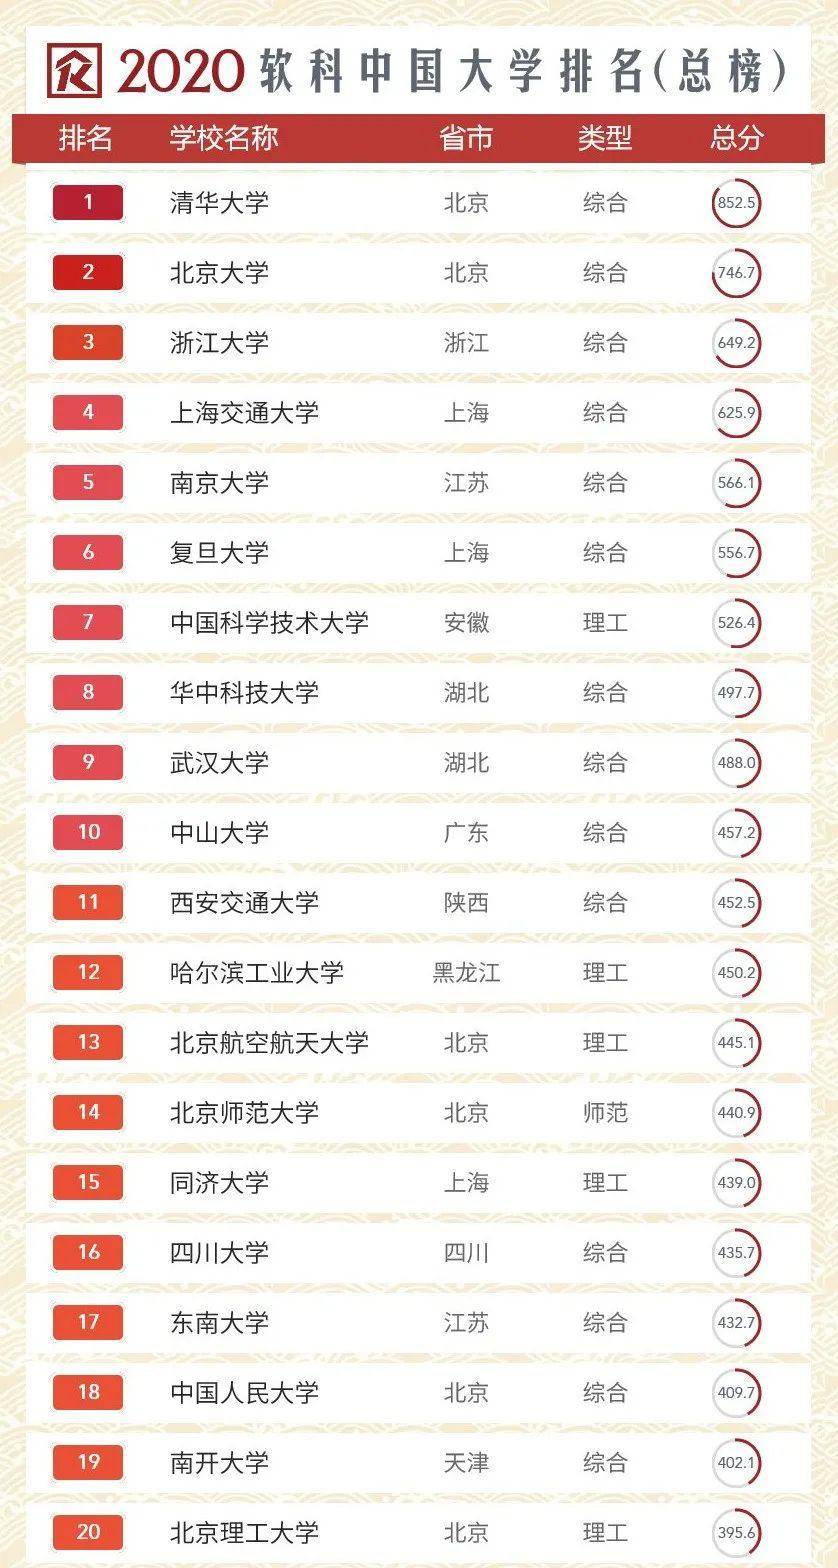 2020全国高校排行榜_中国重点大学网购排行榜发布 看看有你的母校吗